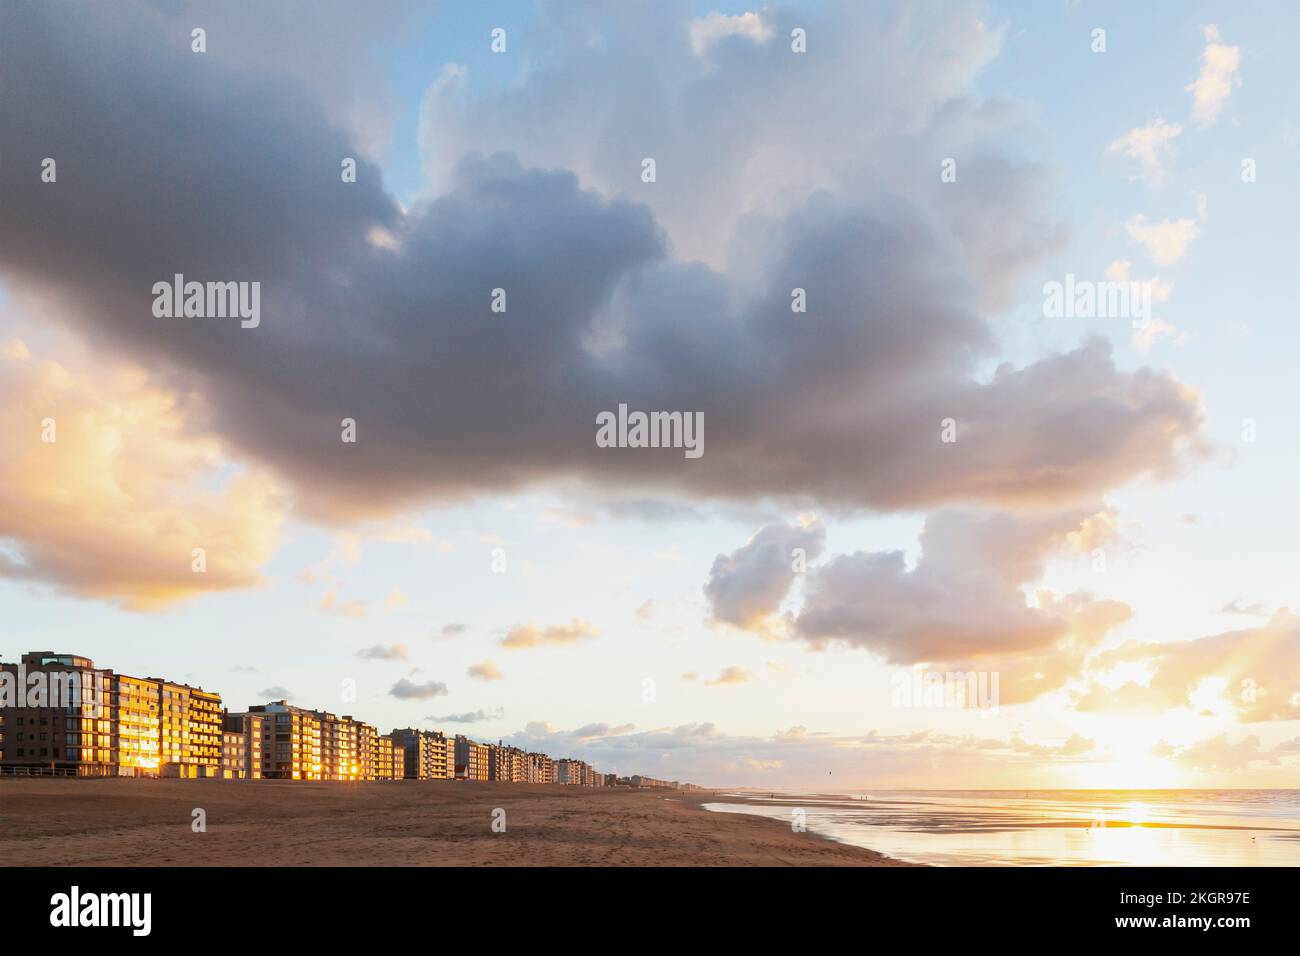 Belgique, Flandre Occidentale, nuages au coucher du soleil sur les immeubles d'appartements en bord de plage Banque D'Images